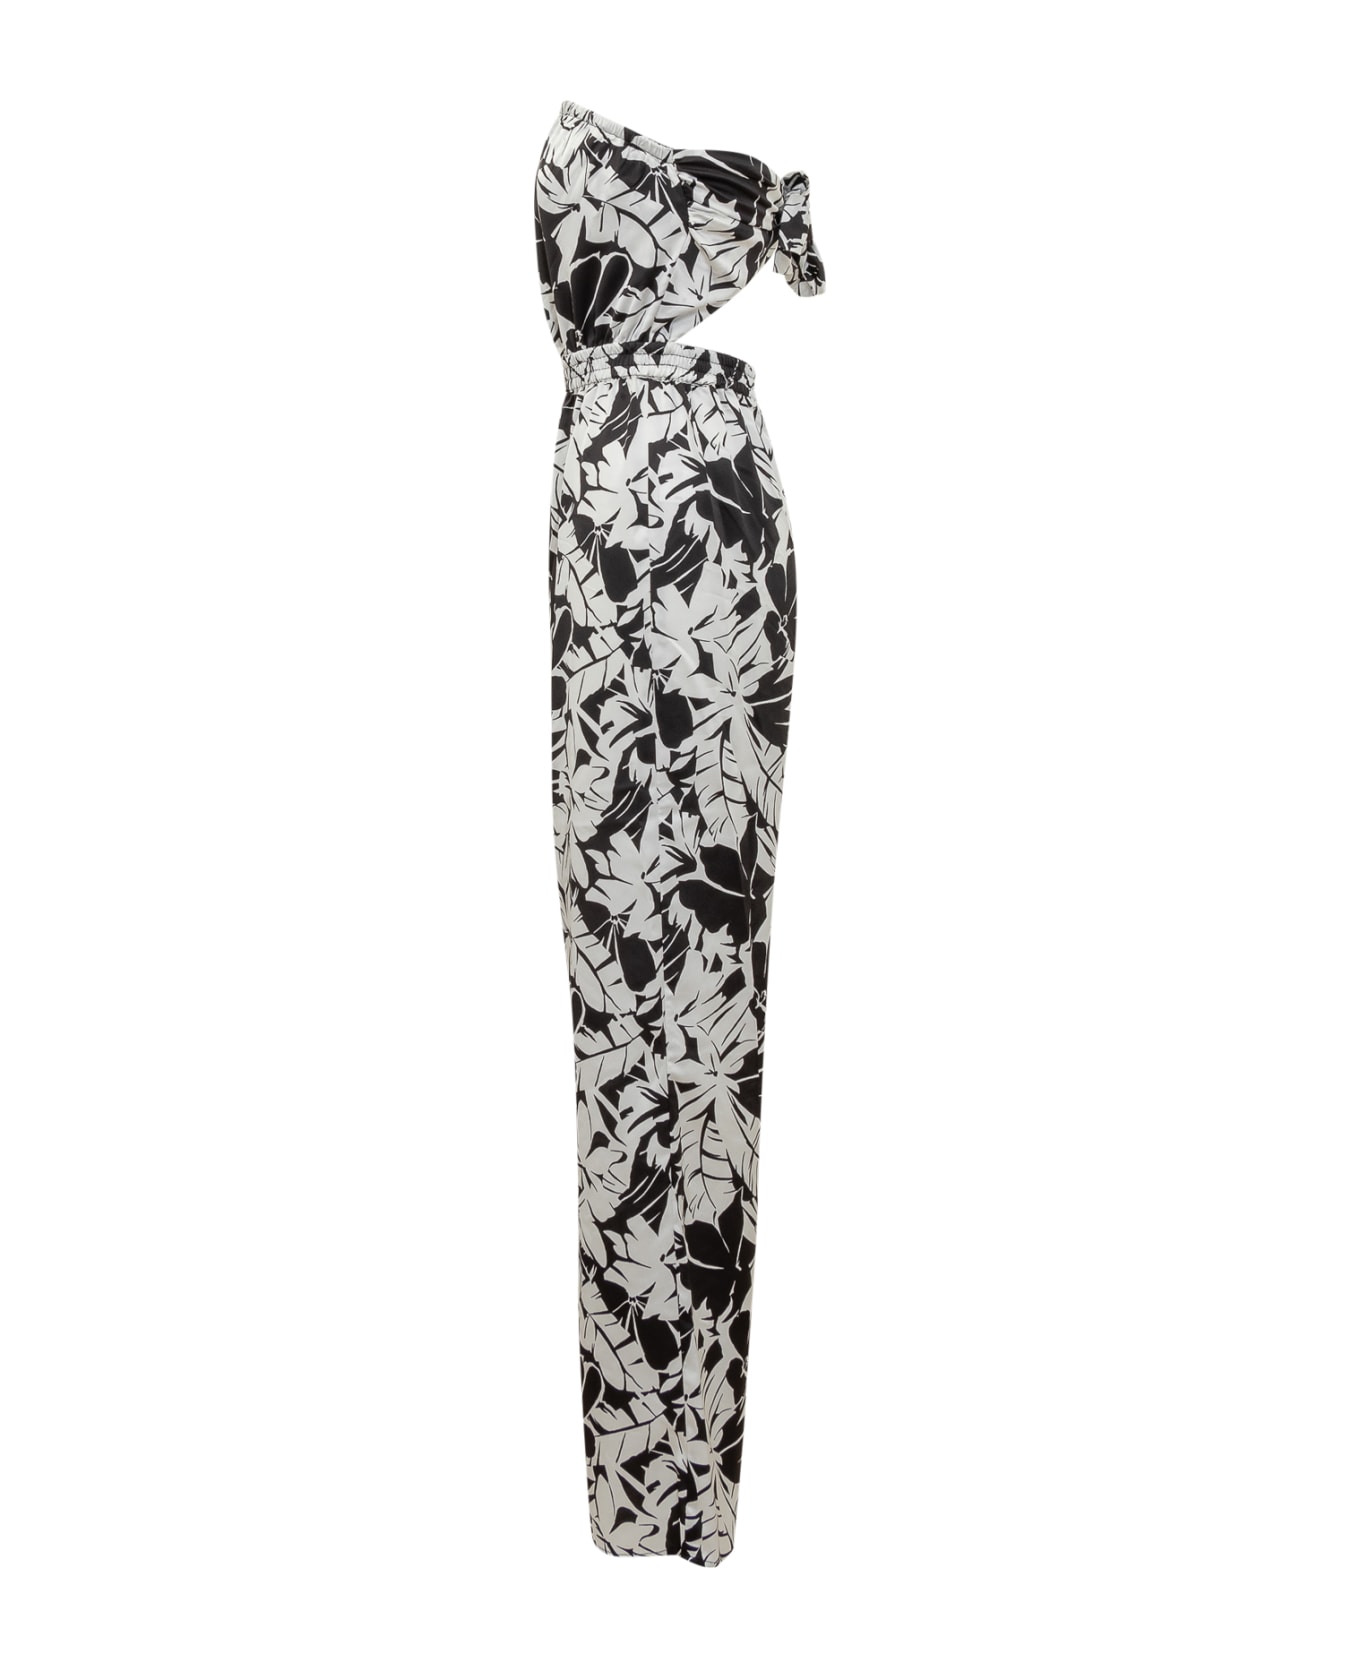 Michael Kors Palm Tie Jumpsuit - Black White